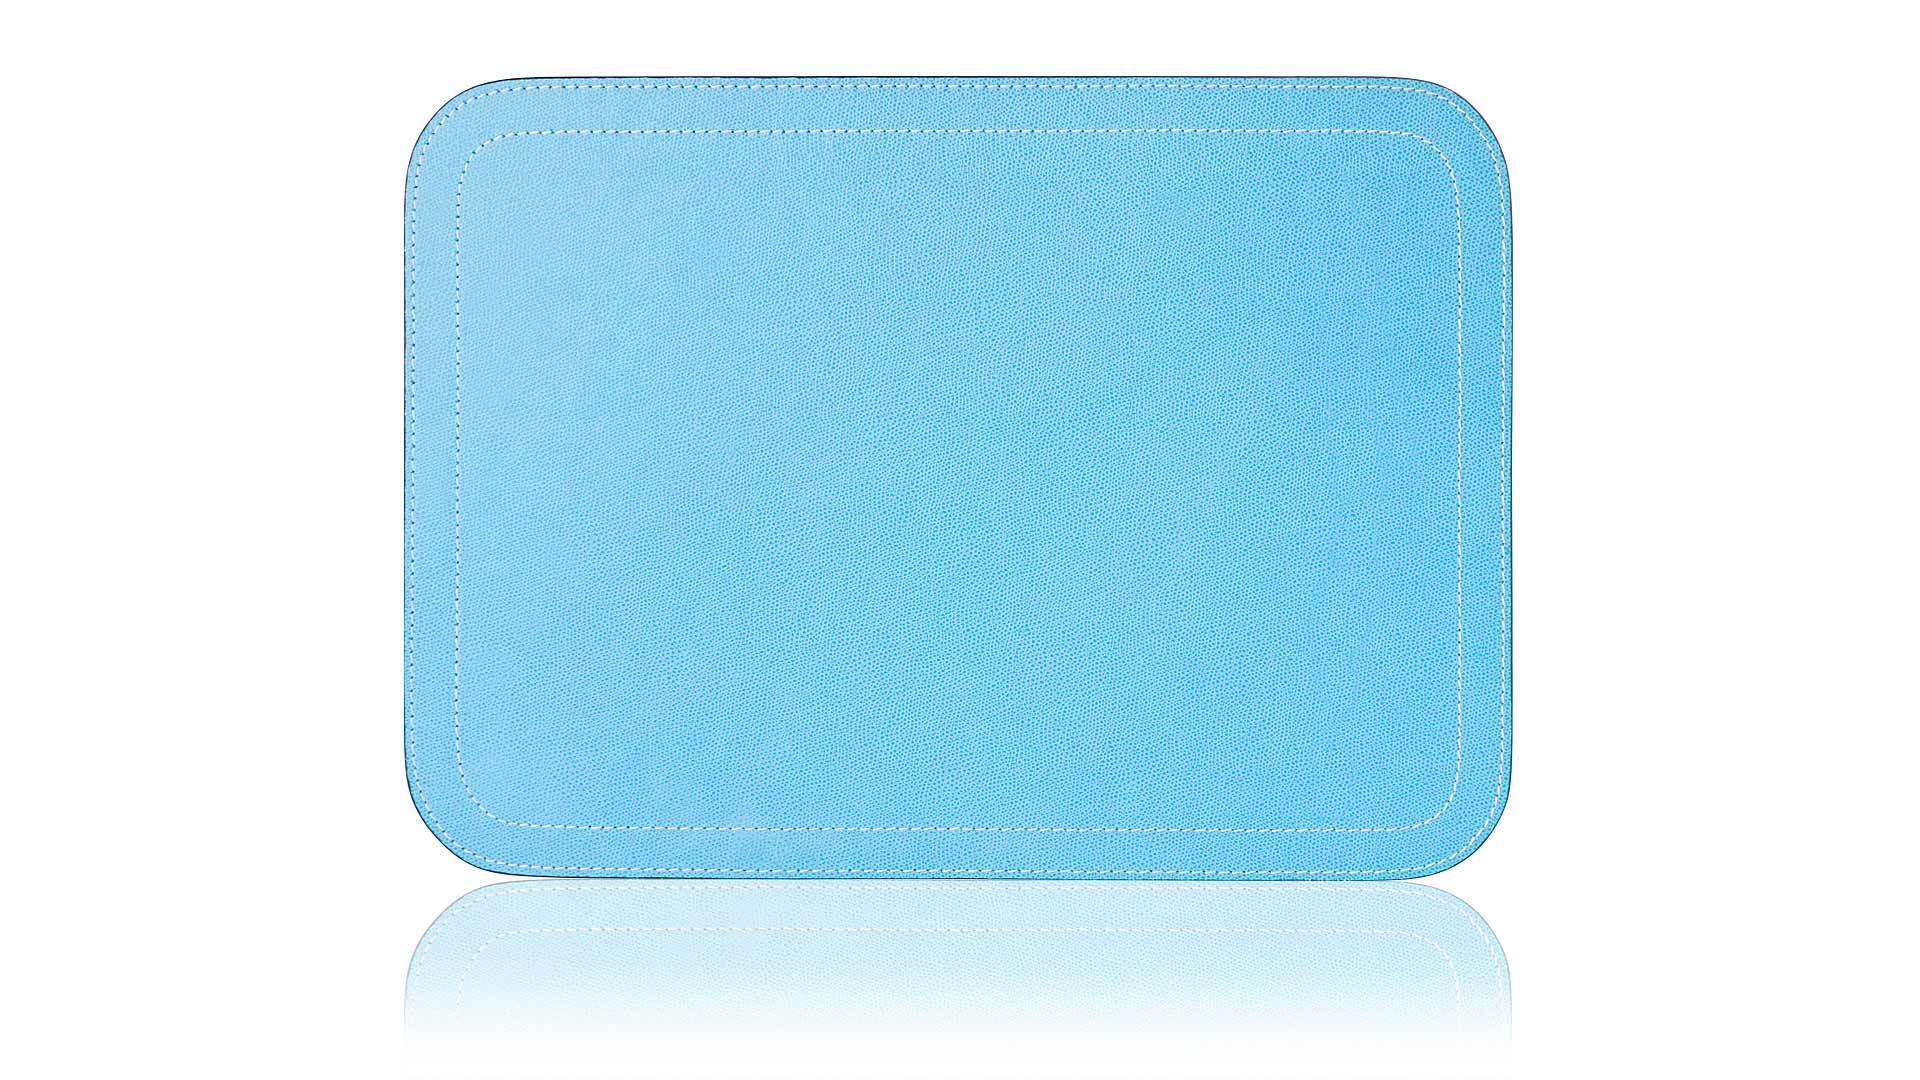 Салфетка подстановочная прямоугольная с закругленными углами GioBagnara Ванни 46х34 см, голубая